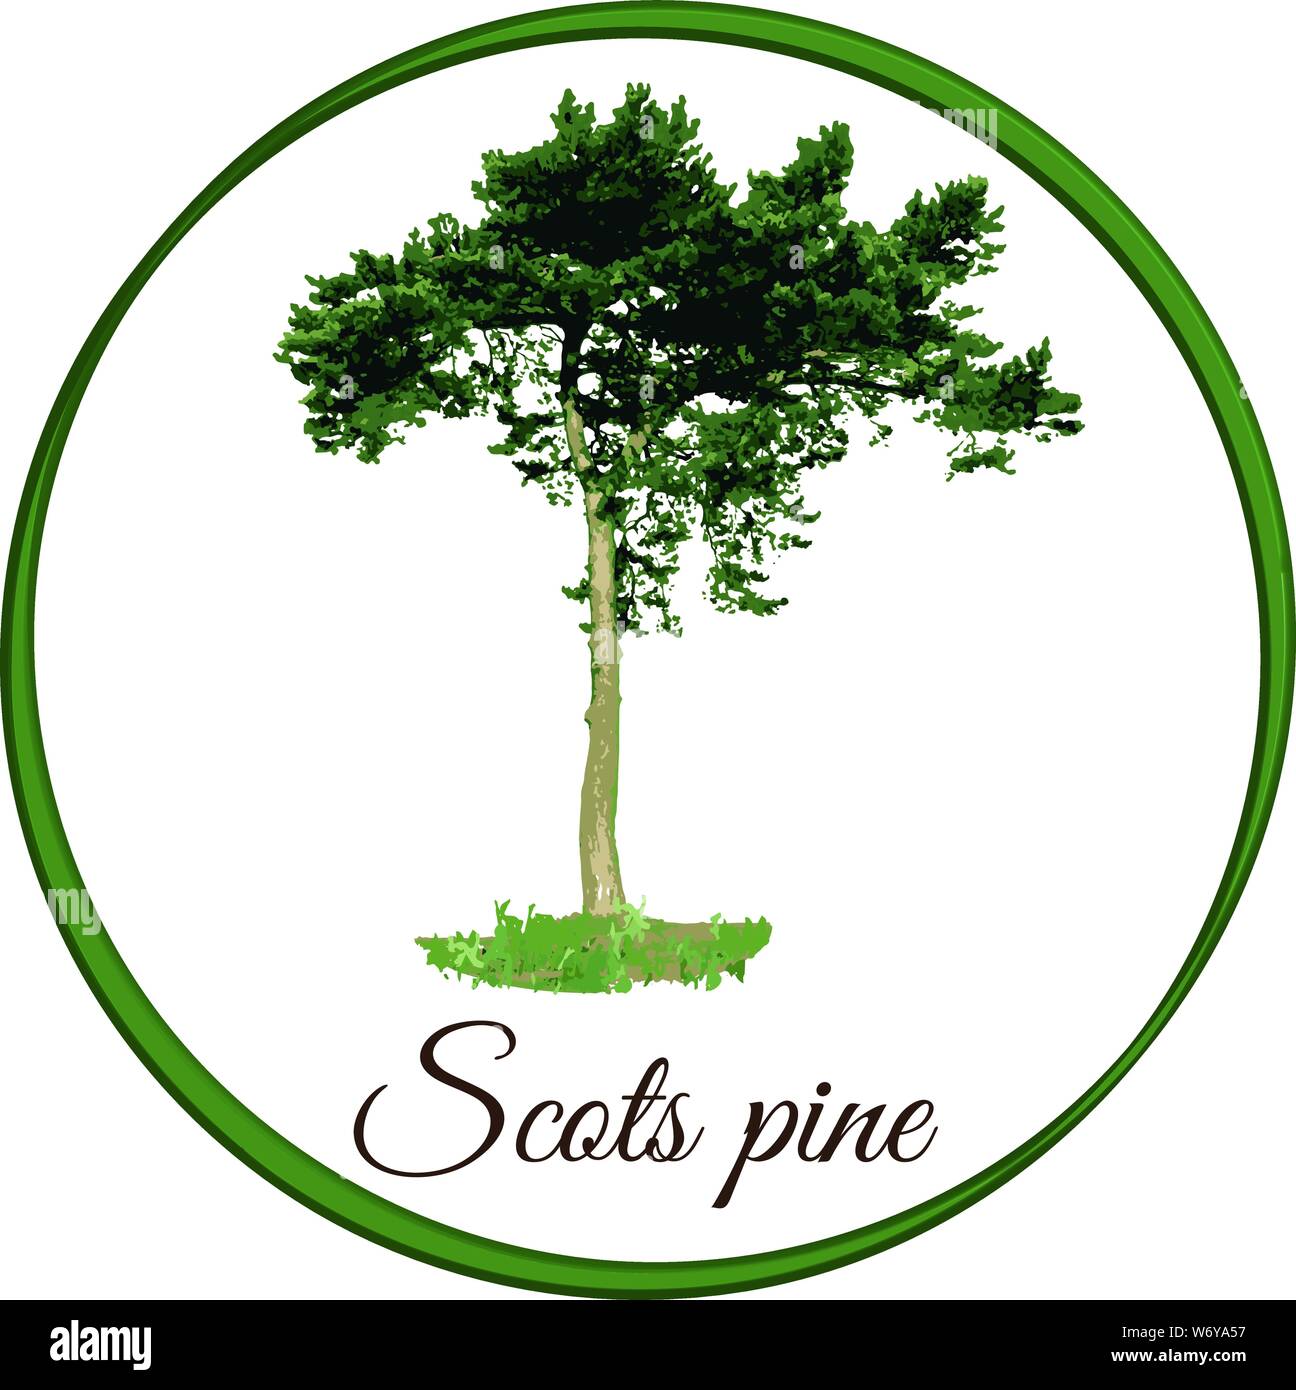 Scots Pine Tree als Vektor gezeichnet Nadelbaum Evergreen Stock Vektor